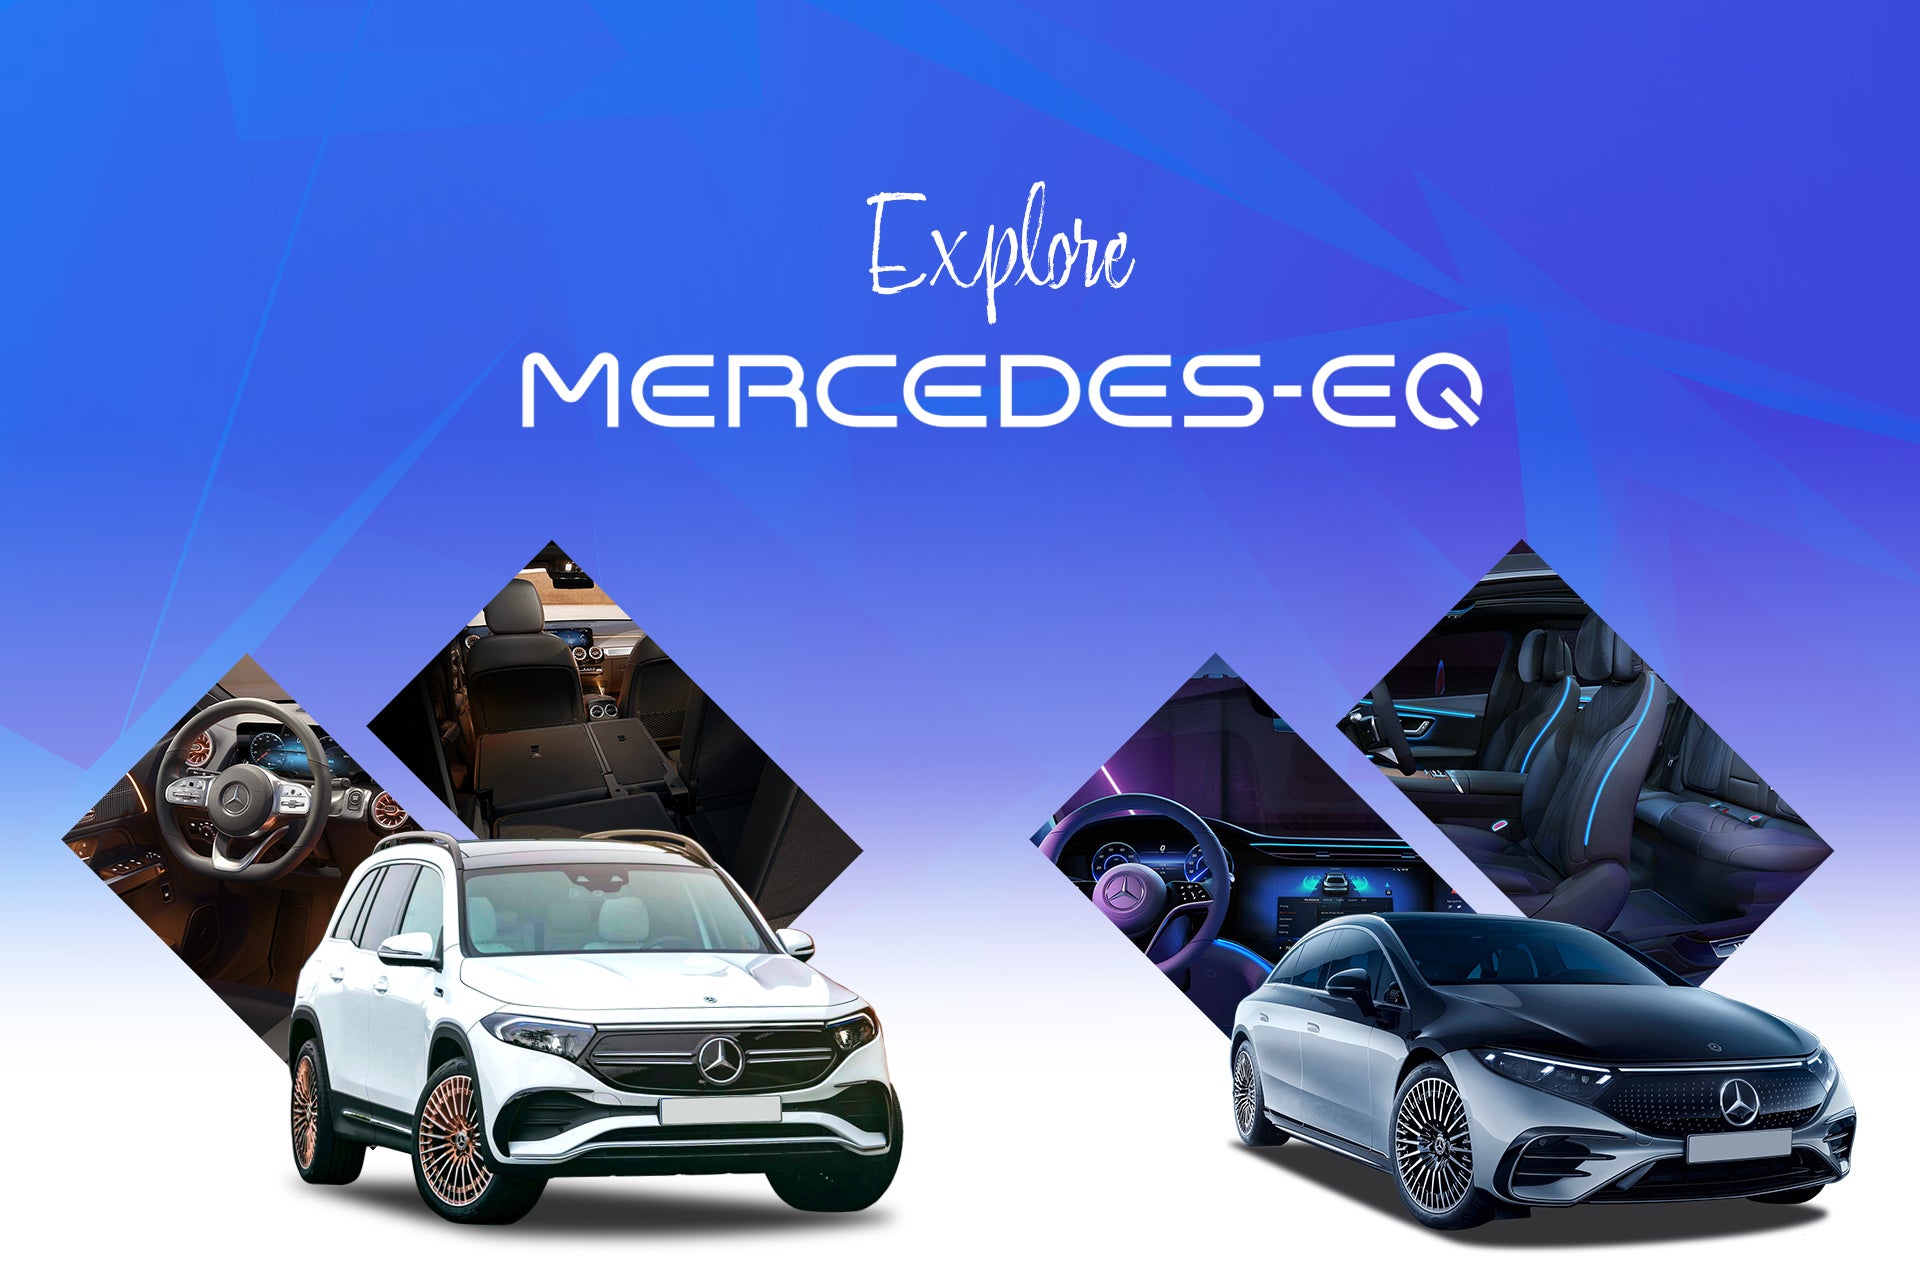 Mercedes-Benz EQ Background